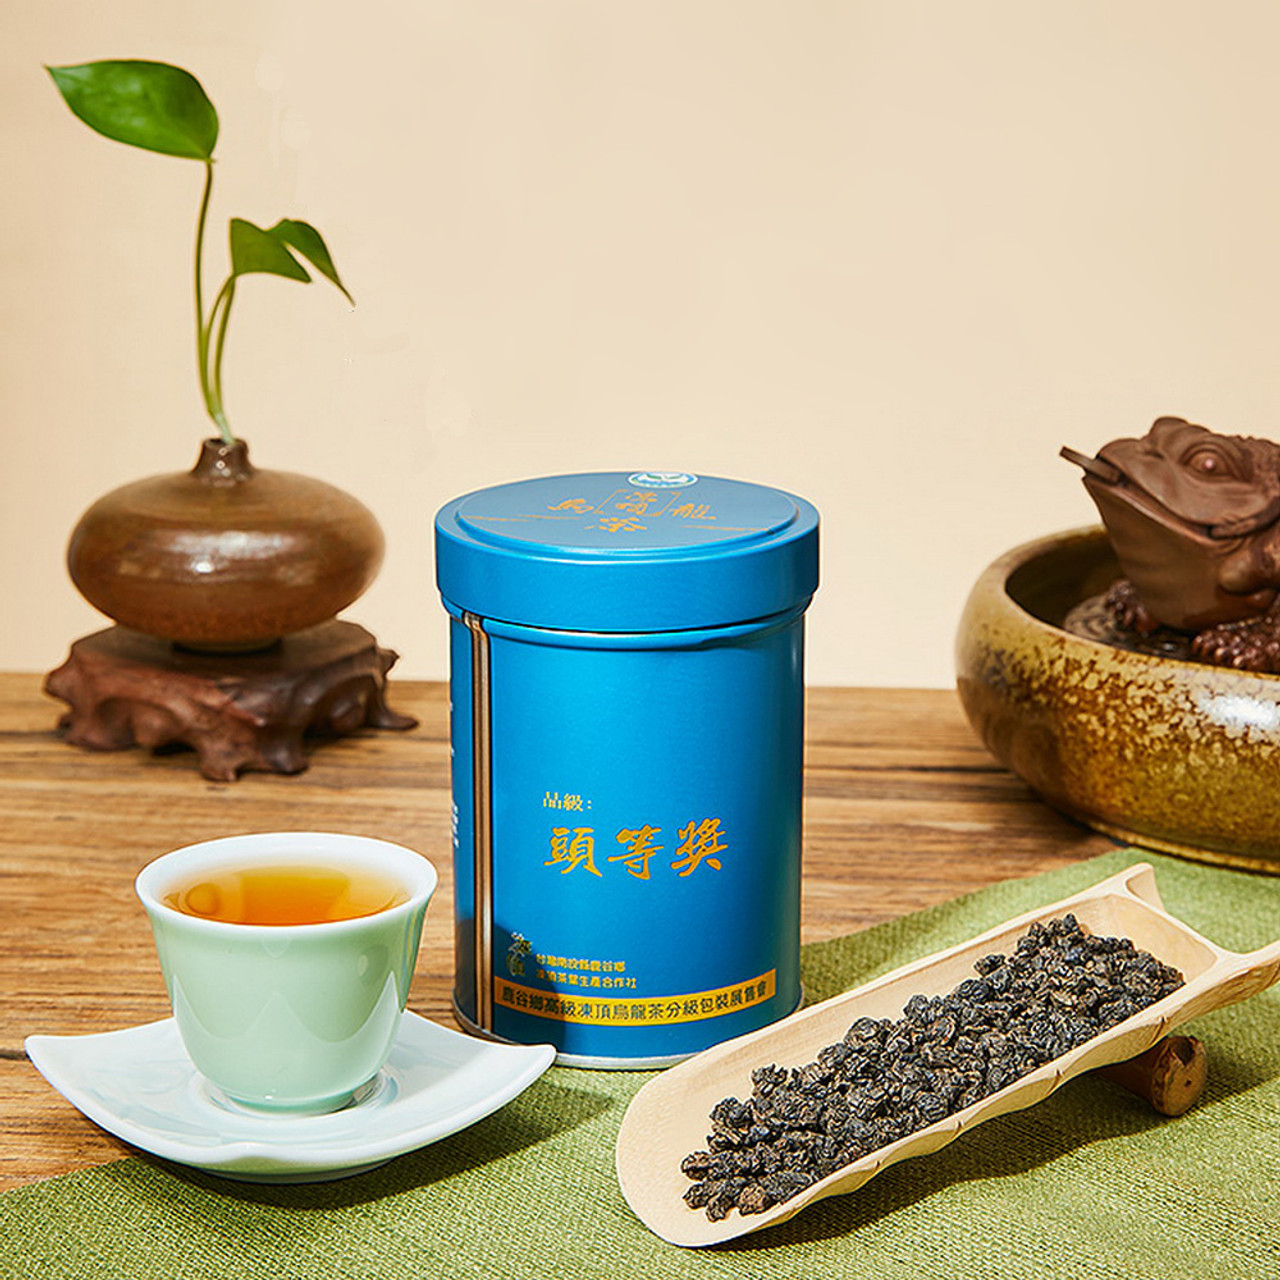 TAIWAN TEA Brand Rui Feng Jin Zhi Qing Xiang AliShan Taiwan High Mountain  Gao Shan Oolong Tea 150g